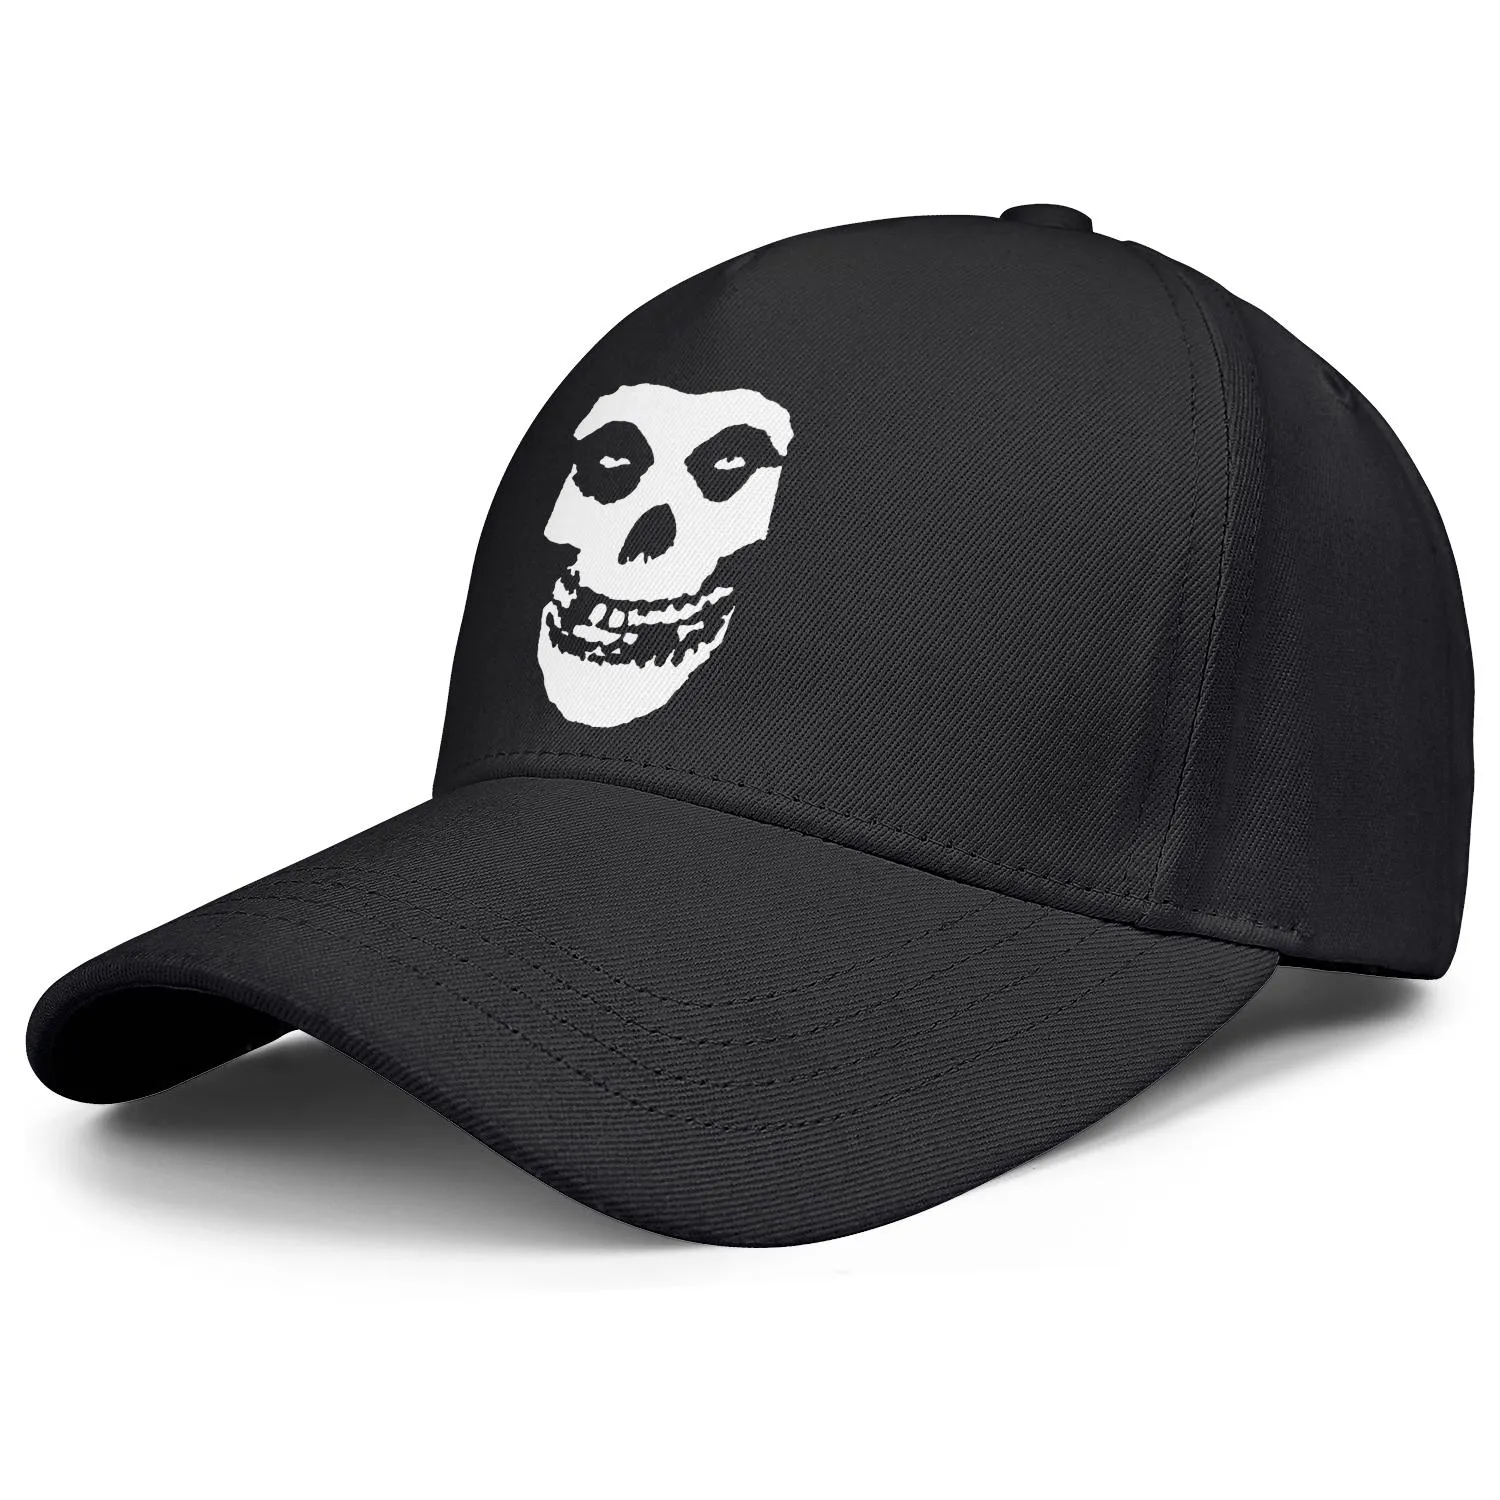 Danzig Designs Misfits Fiend Skull черная мужская и женская бейсболка дизайнерский дизайнер гольфа классные уникальные классические шляпы на заказ G4380977